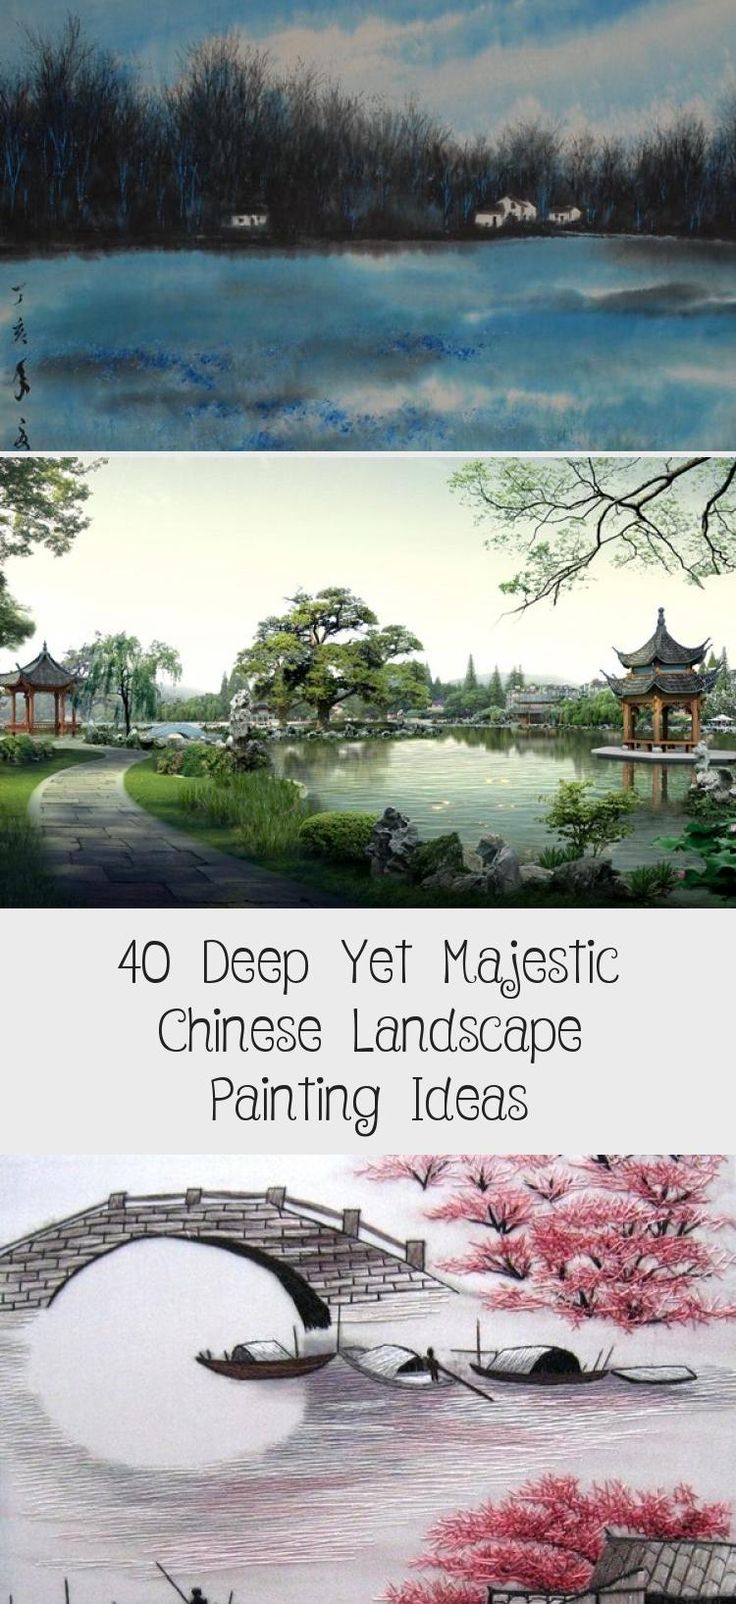 Vorgartengestaltung Bilder Best Of 40 Deep yet Majestic Chinese Landscape Painting Ideas